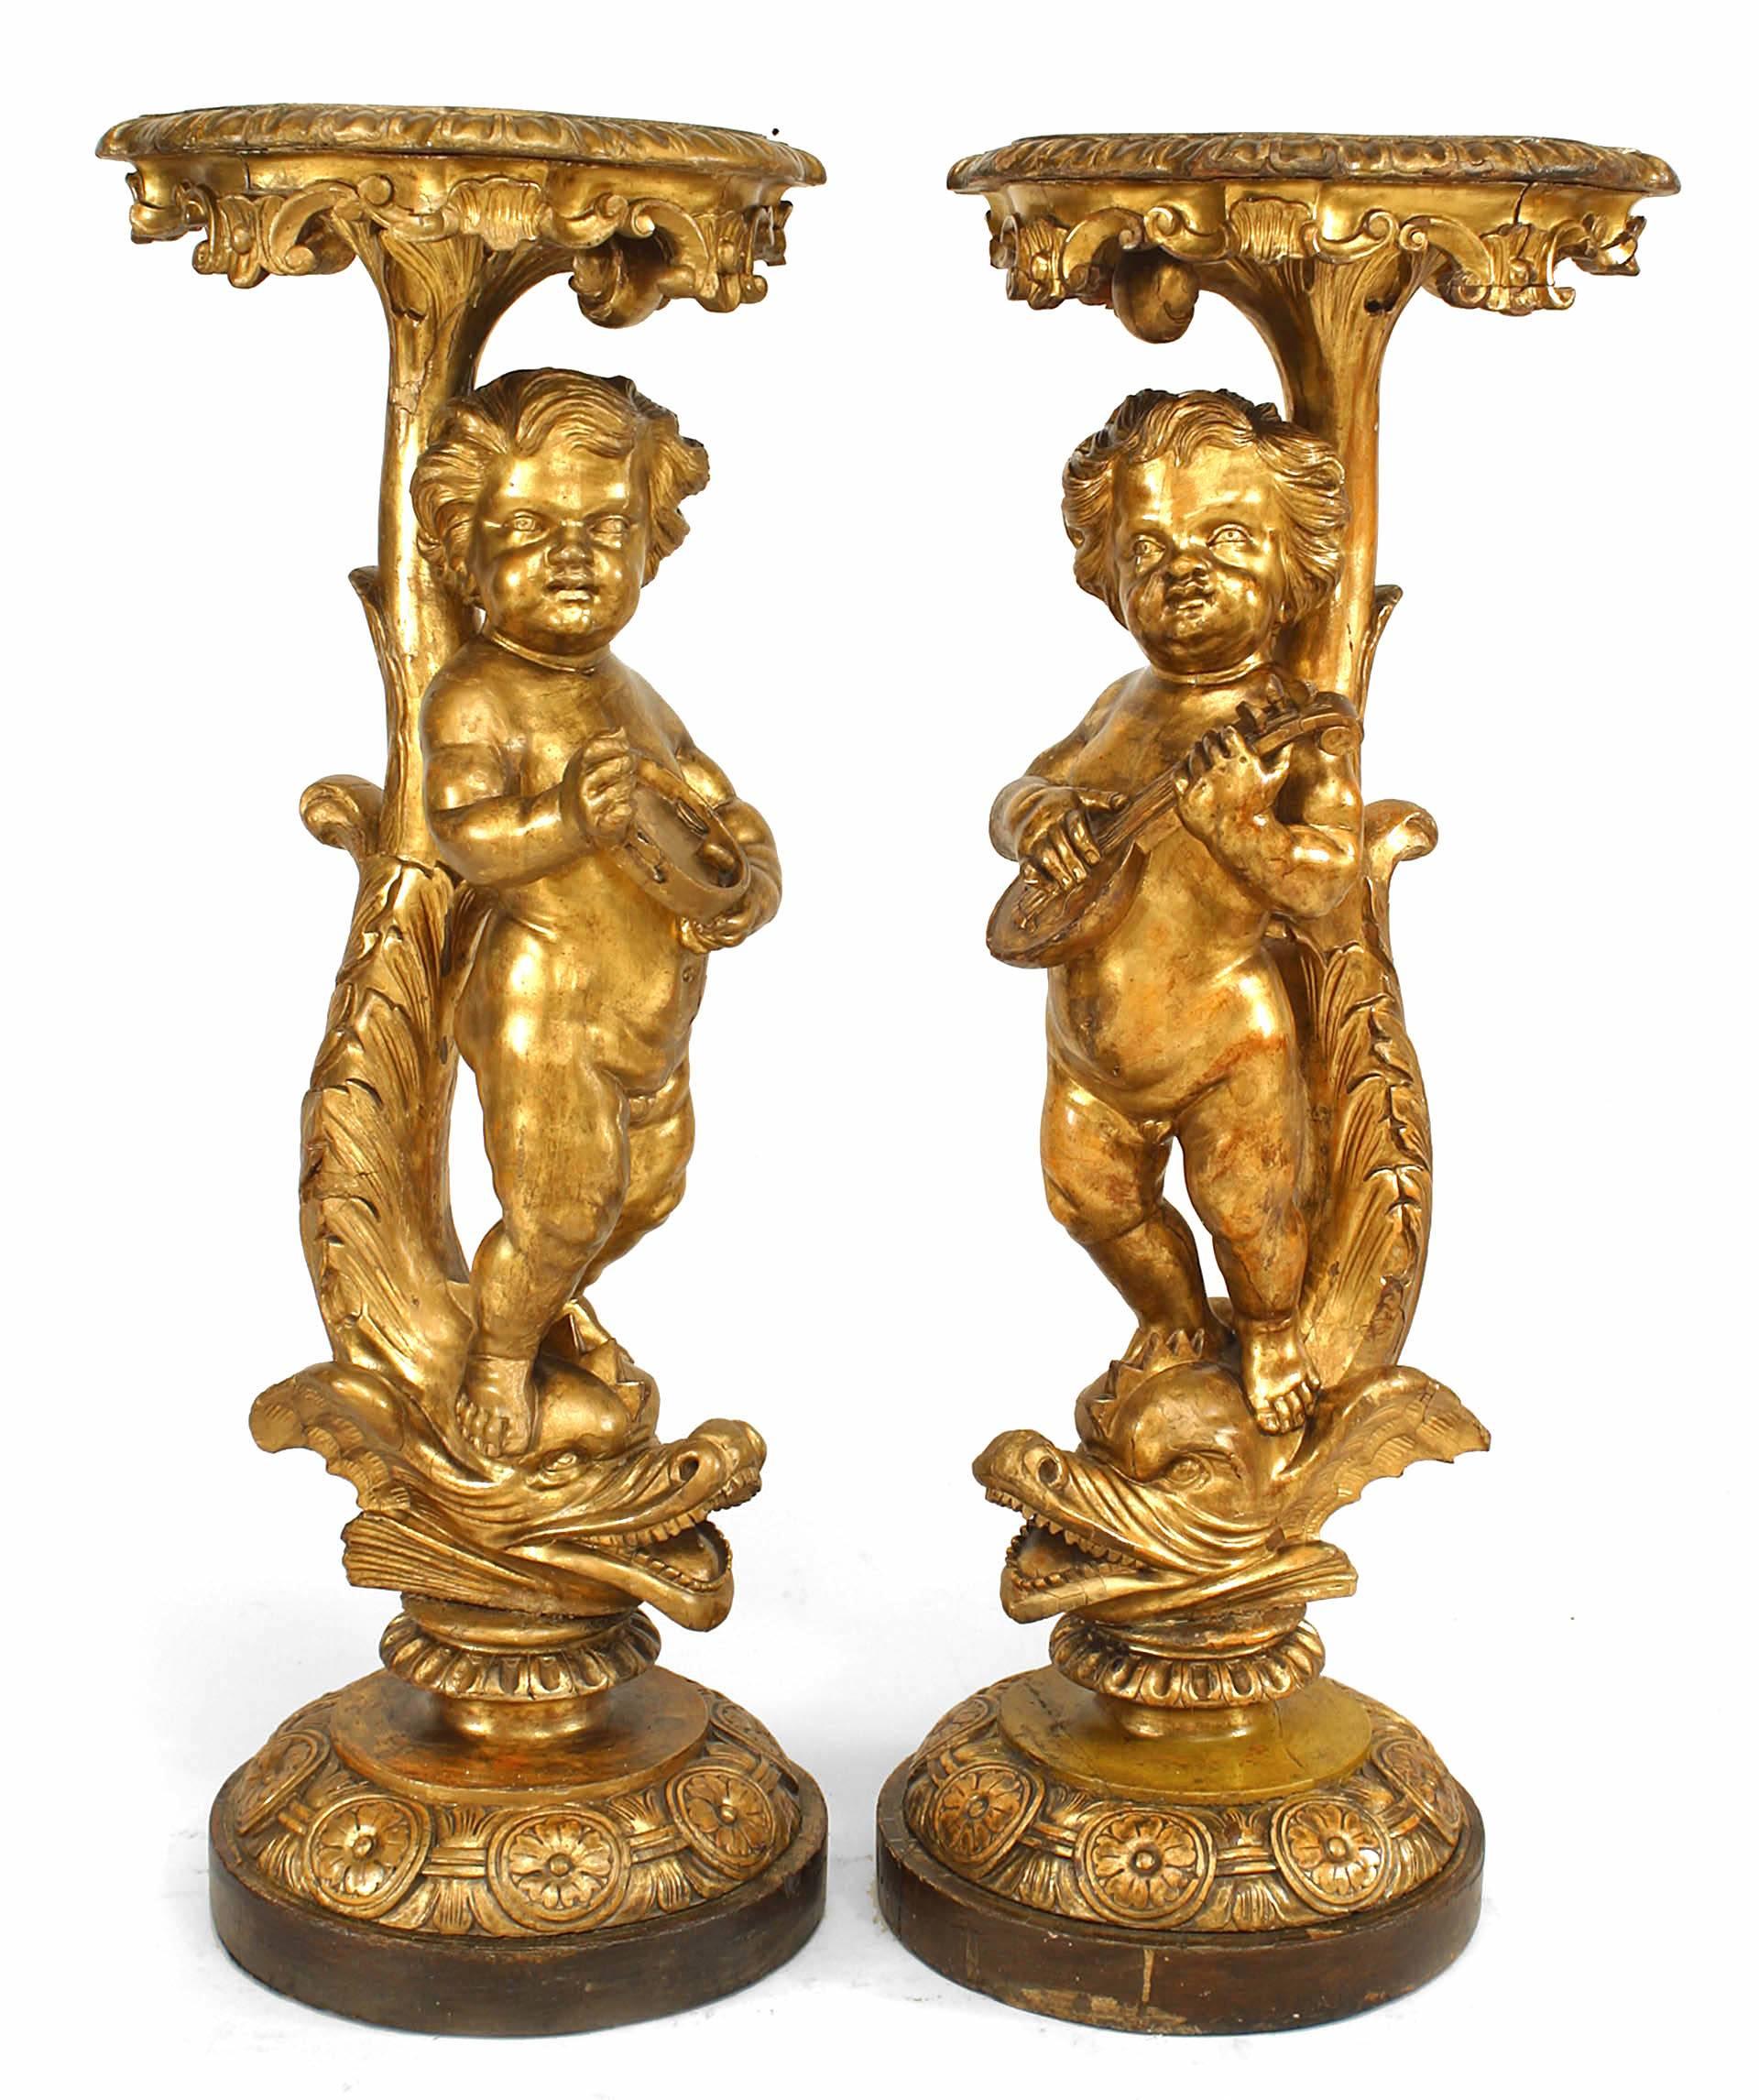 Zwei vergoldete Sockel im Stil von Louis XV (19. Jh.) mit Cherubfiguren, die Musikinstrumente spielen und auf Meerestieren stehen.
